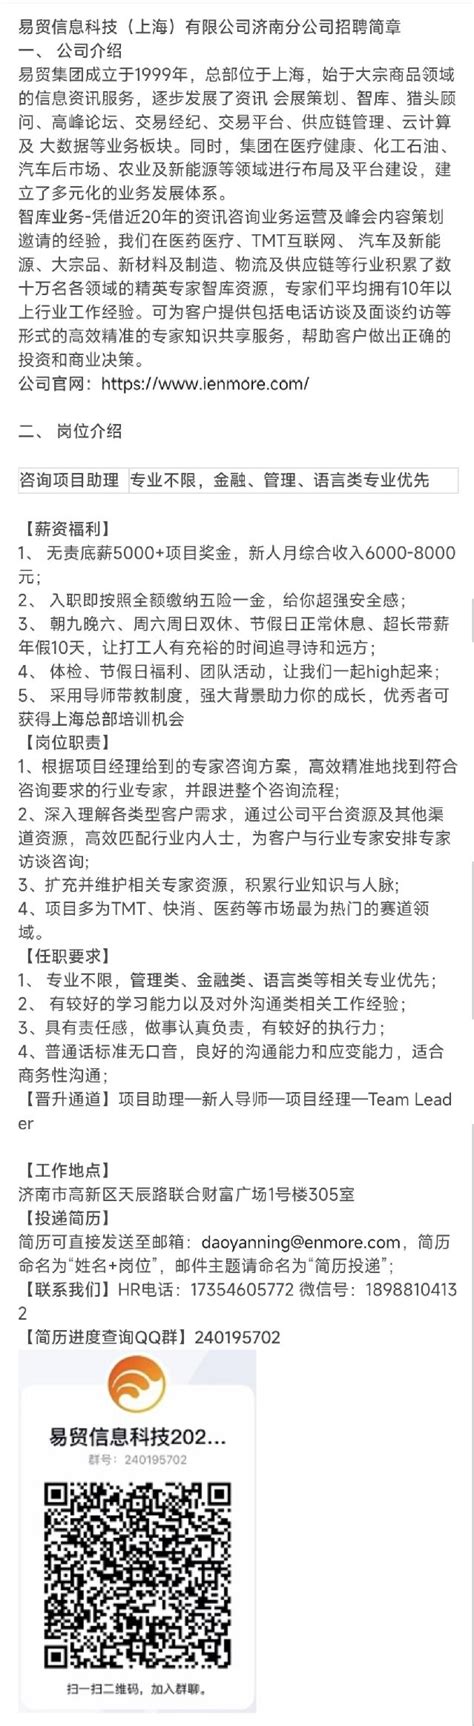 济南分公司 - 浙江固泰工程检测科技有限公司